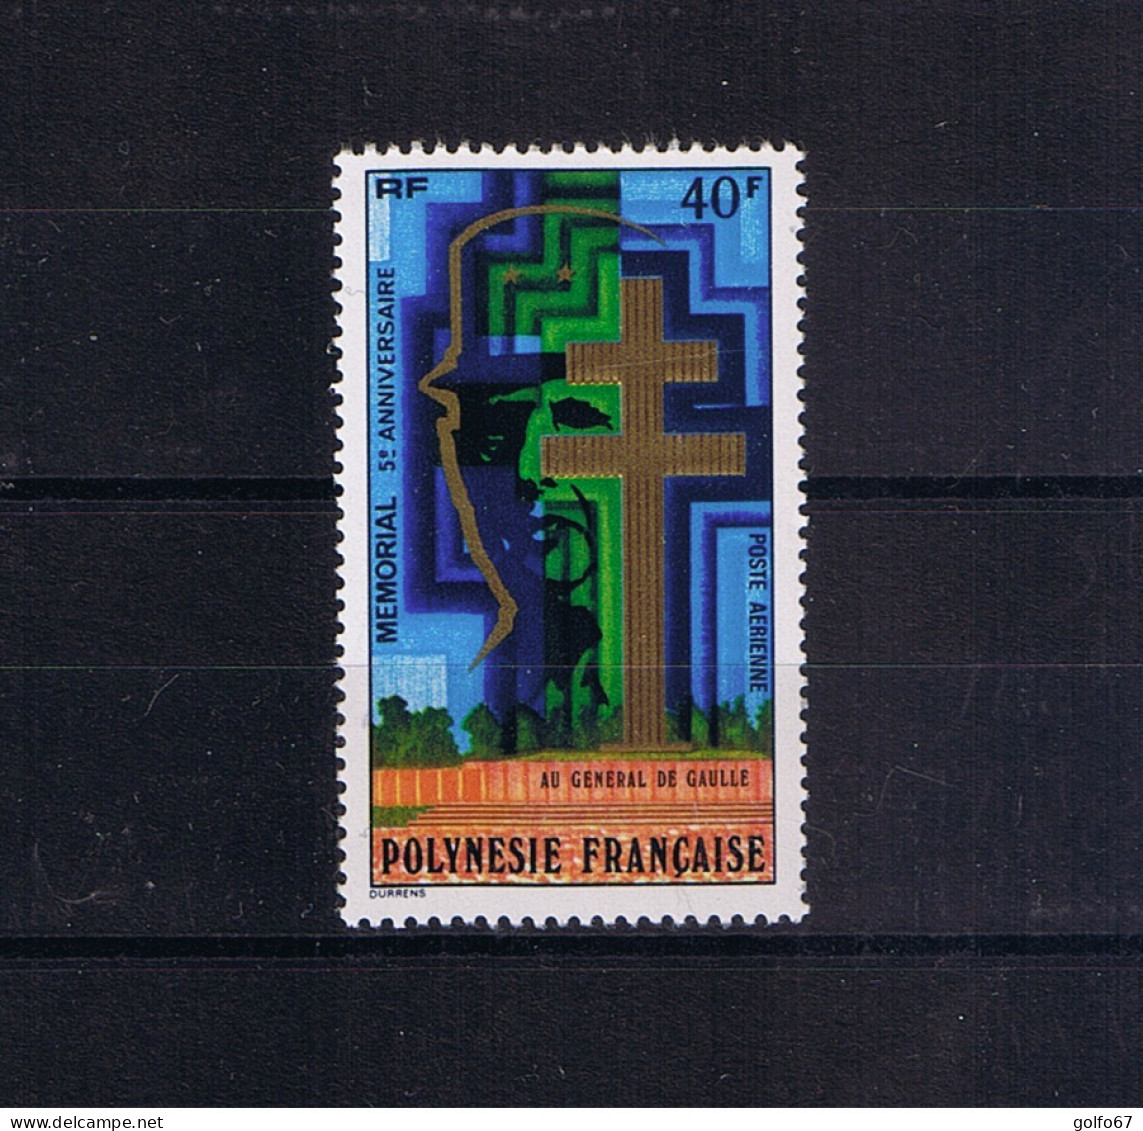 POLYNÉSIE FRANÇAISE Poste Aérienne 1977 Y&T N° 123 NEUF** - Ungebraucht